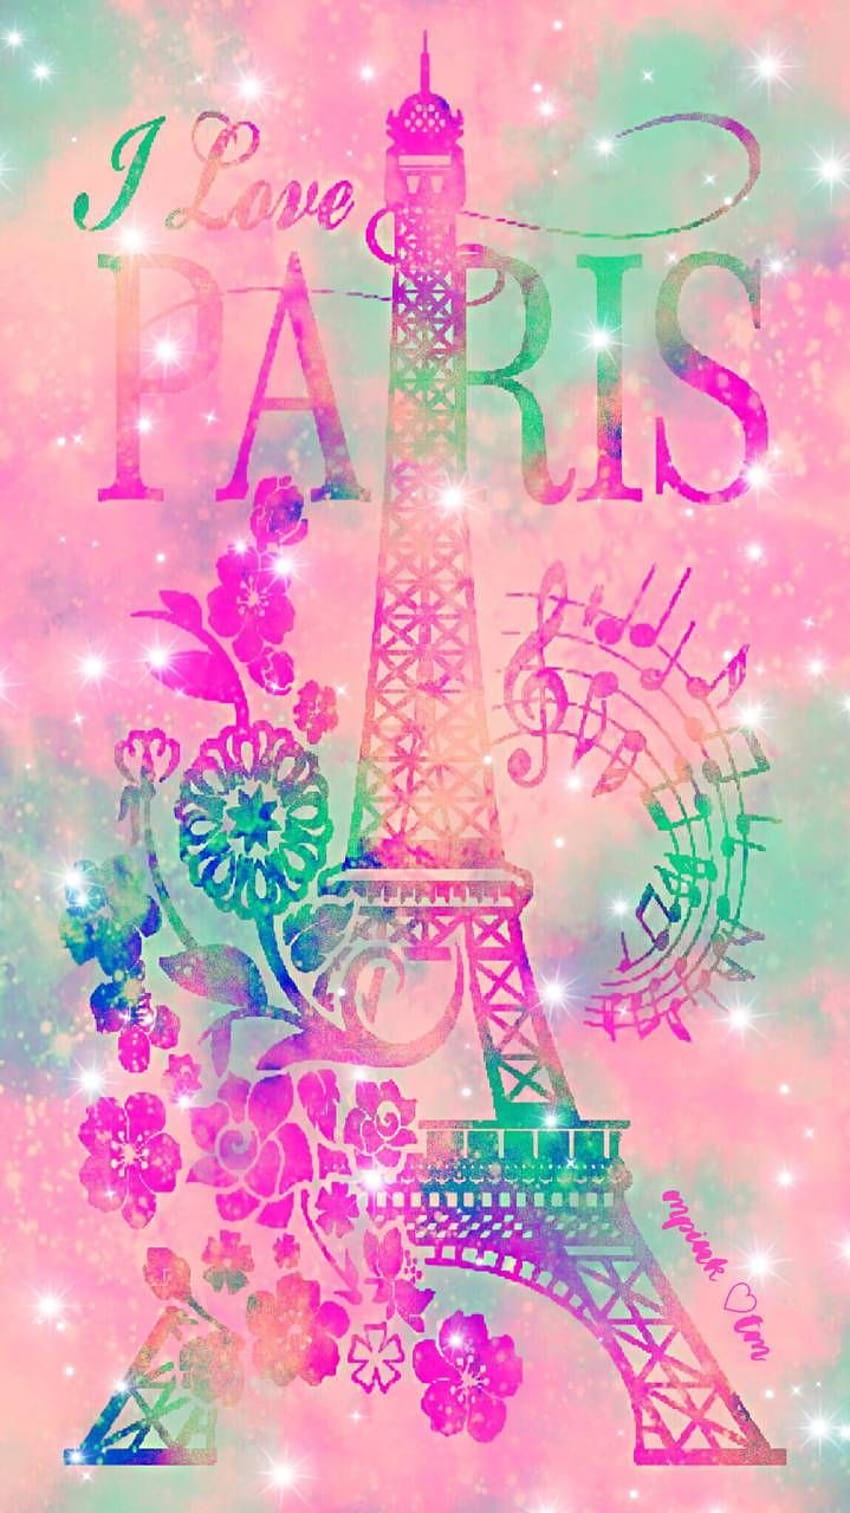 Paris Galaxy wallpaper: Hình nền Paris Galaxy với phong cách lãng mạn, tinh tế sẽ là điểm nhấn cho màn hình điện thoại của bạn. Bức ảnh với gam màu tươi sáng, sẽ đem lại cảm giác dịu dàng và ngọt ngào cho người nhìn. Nếu bạn là người yêu thích Paris, thì đừng bỏ qua những tác phẩm nghệ thuật này.